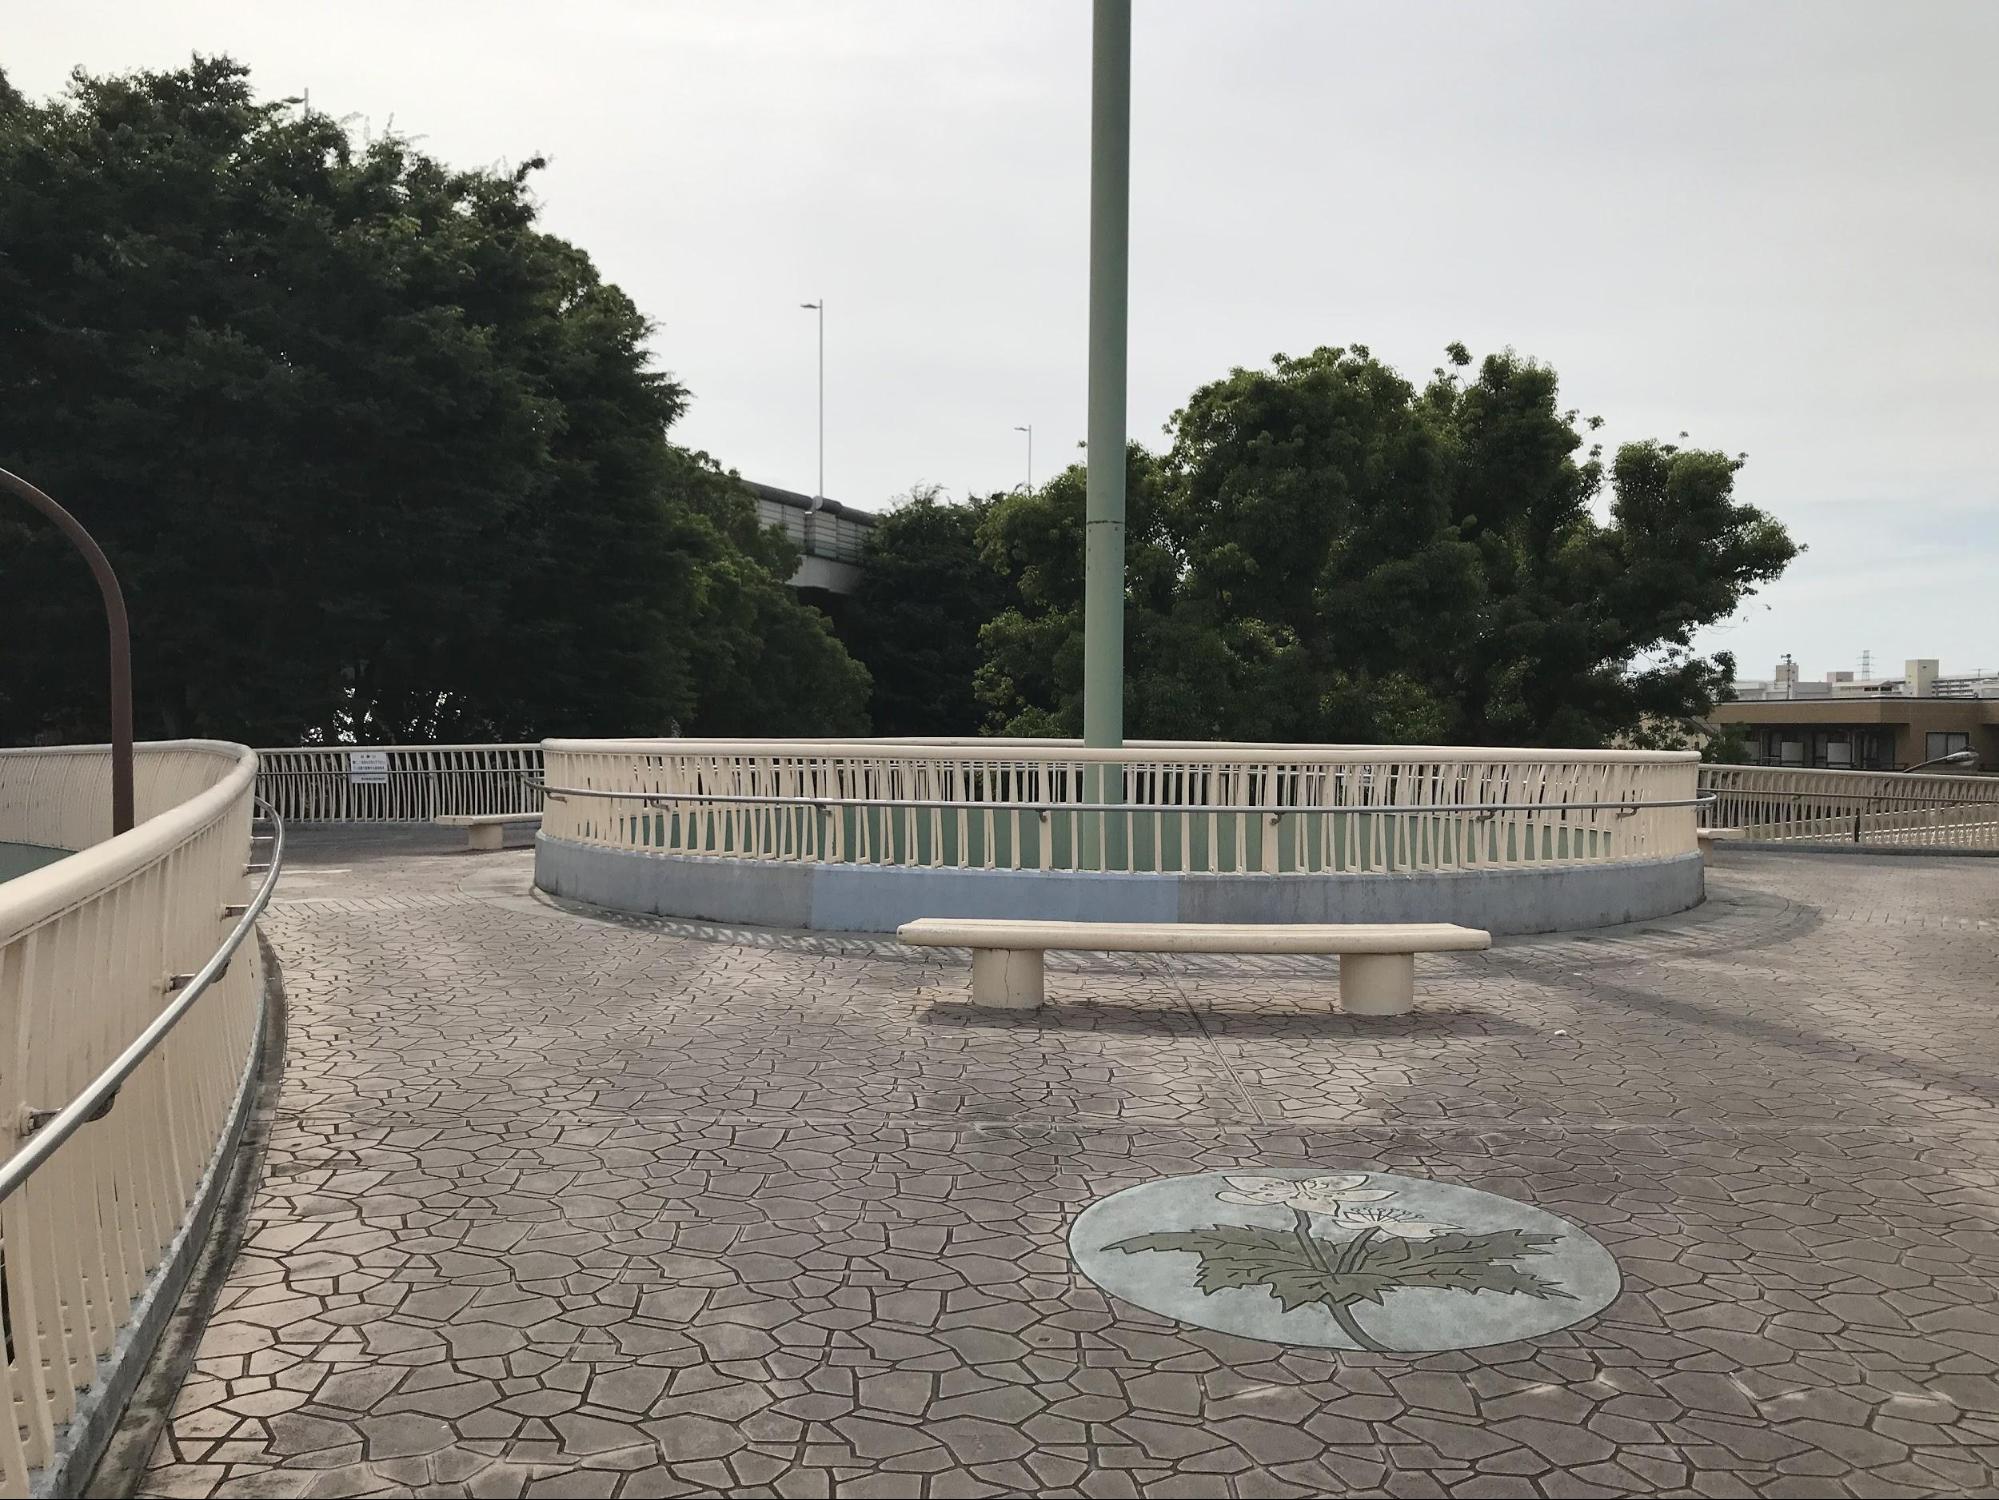 菊池さんが紹介してくれた日本で初めて橋に設置された蓮根歩道橋のベンチ